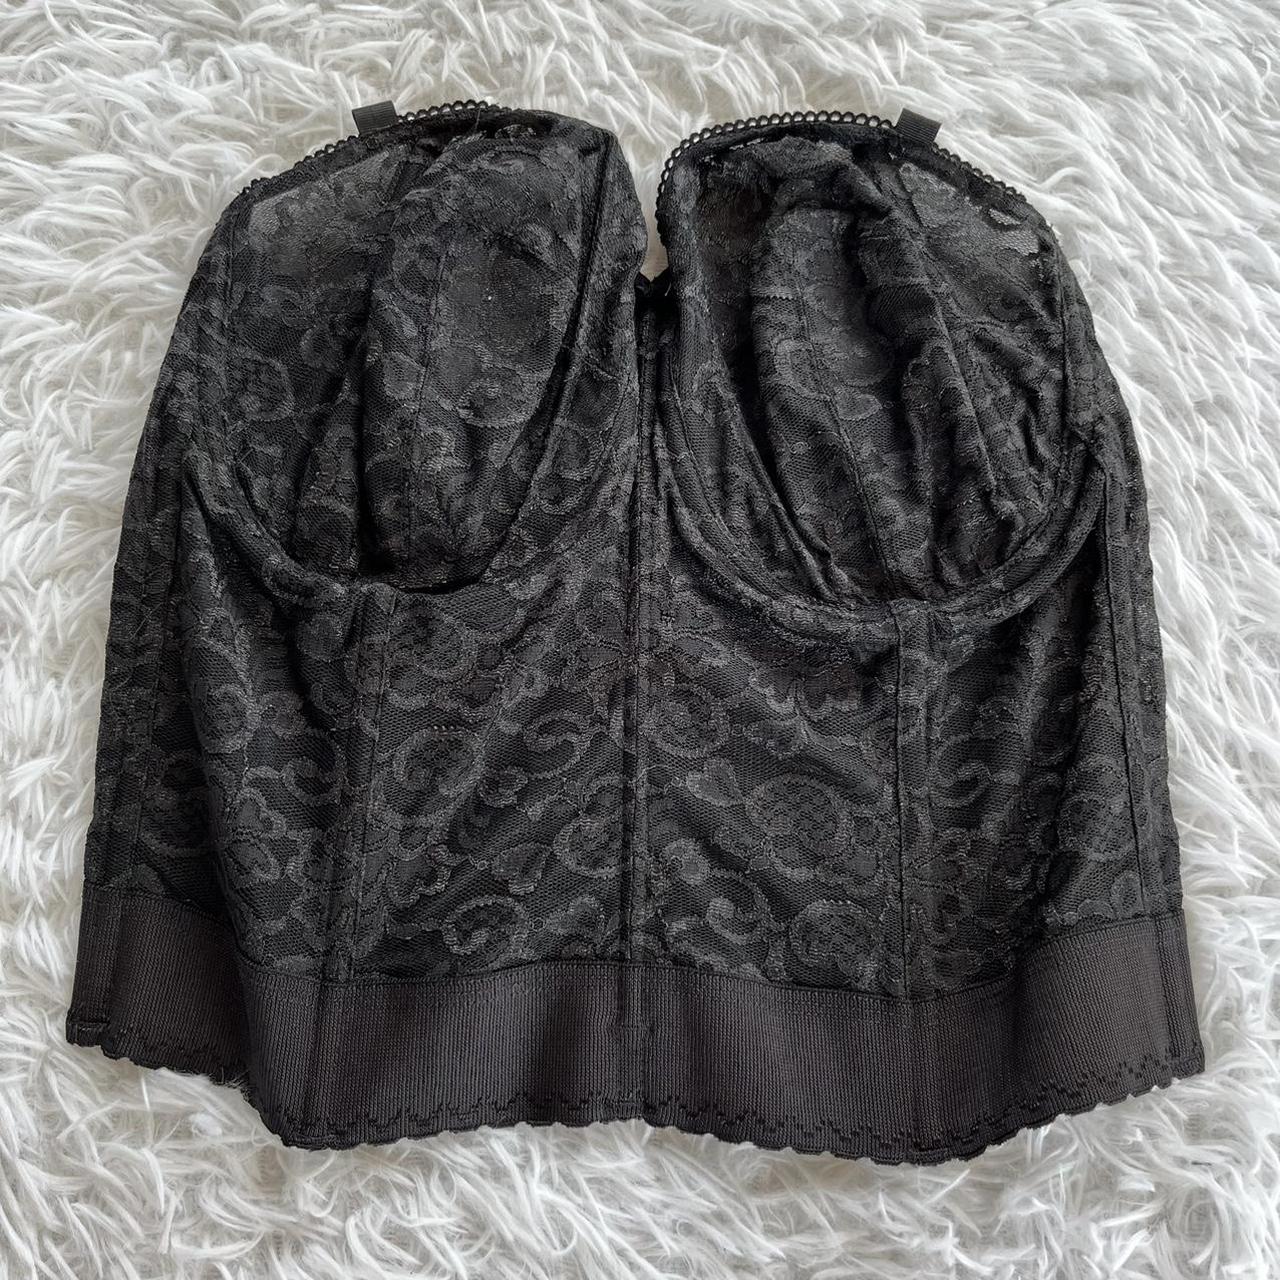 Product Image 1 - black lace detail corset size